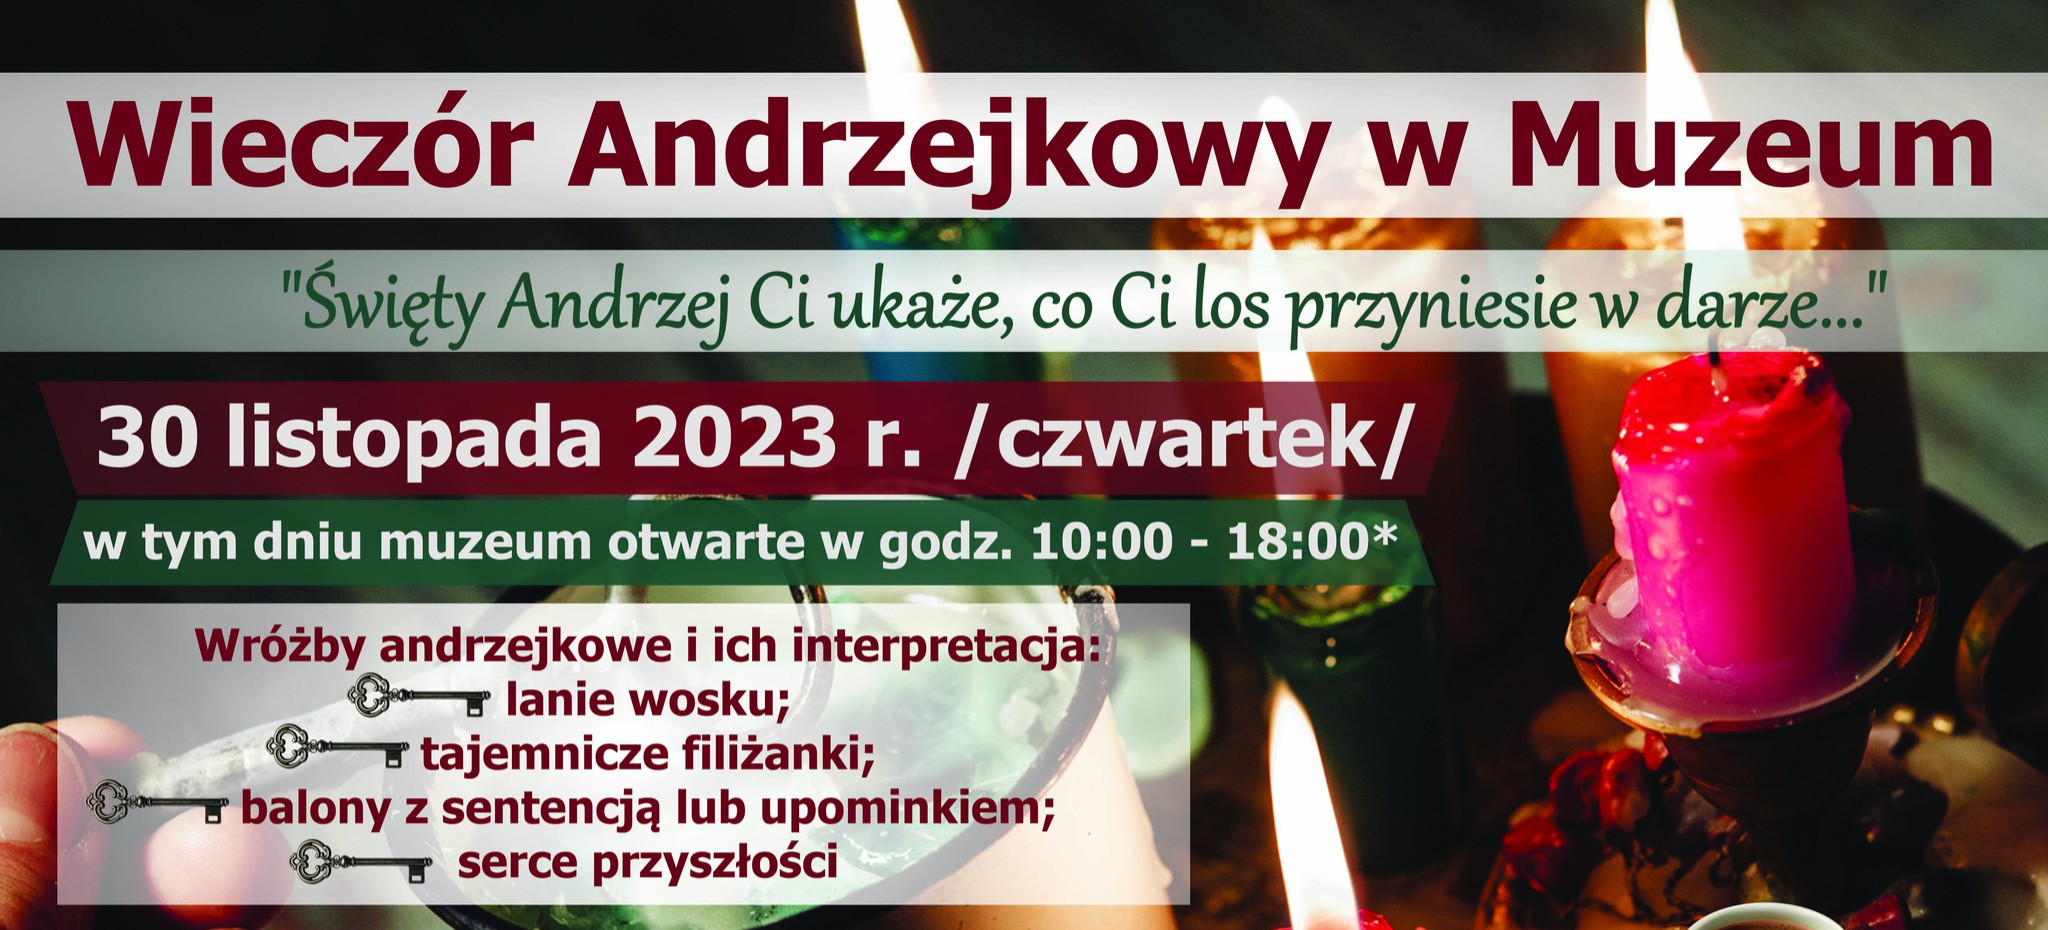 BIESZCZADY24: Wieczór Andrzejkowy w Muzeum Kultury Bojków w Myczkowie